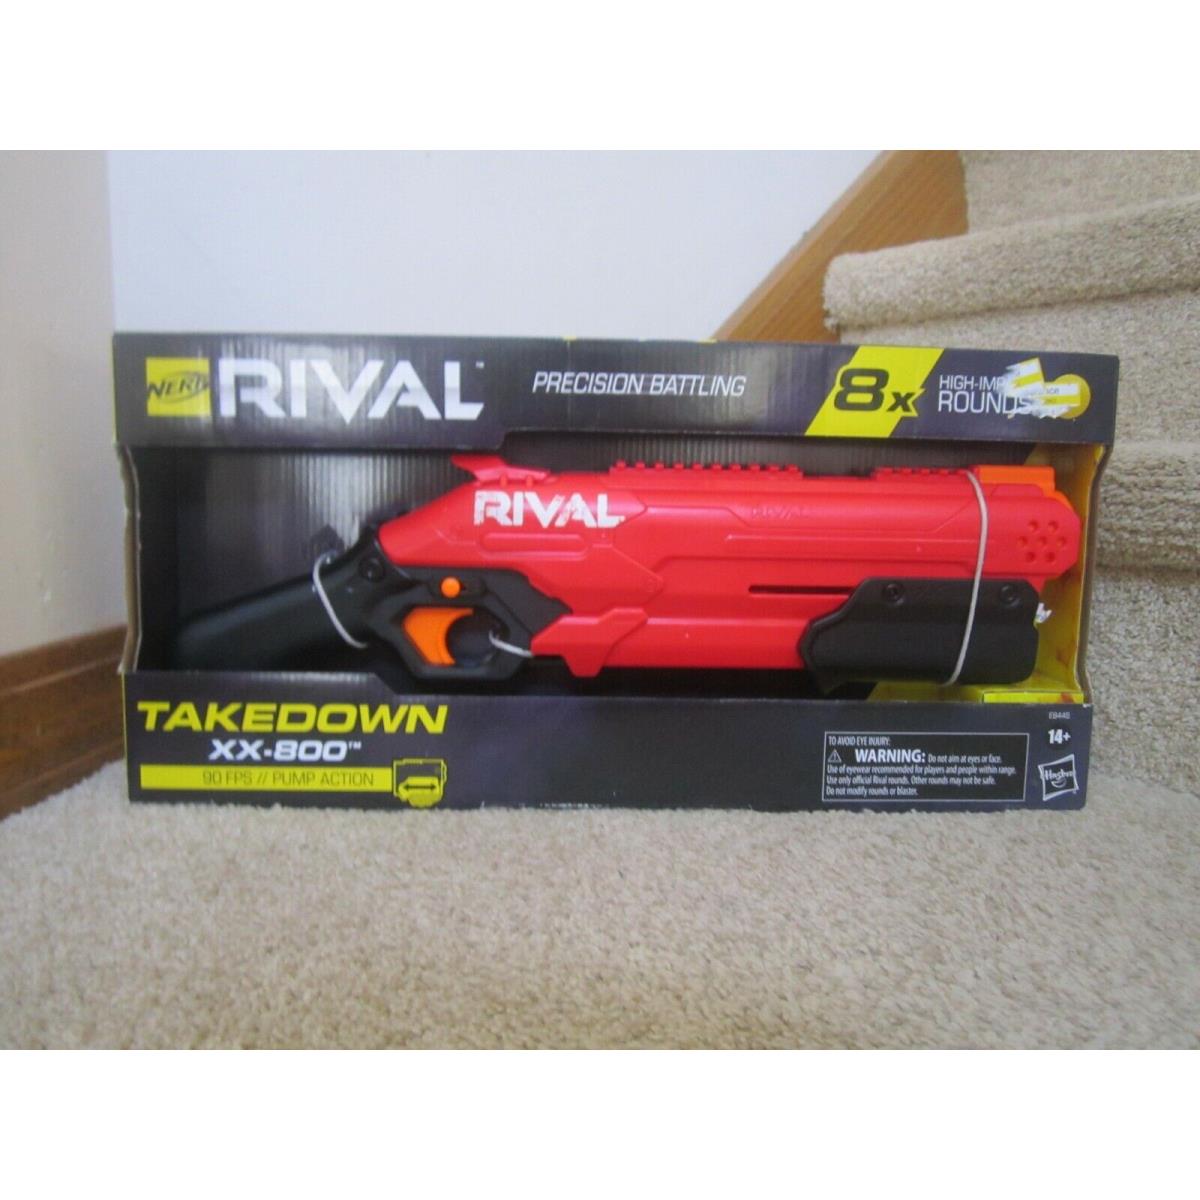 Nerf Foam Rival Takedown xx - 800 Pump Action 8x Rounds Toy Gun